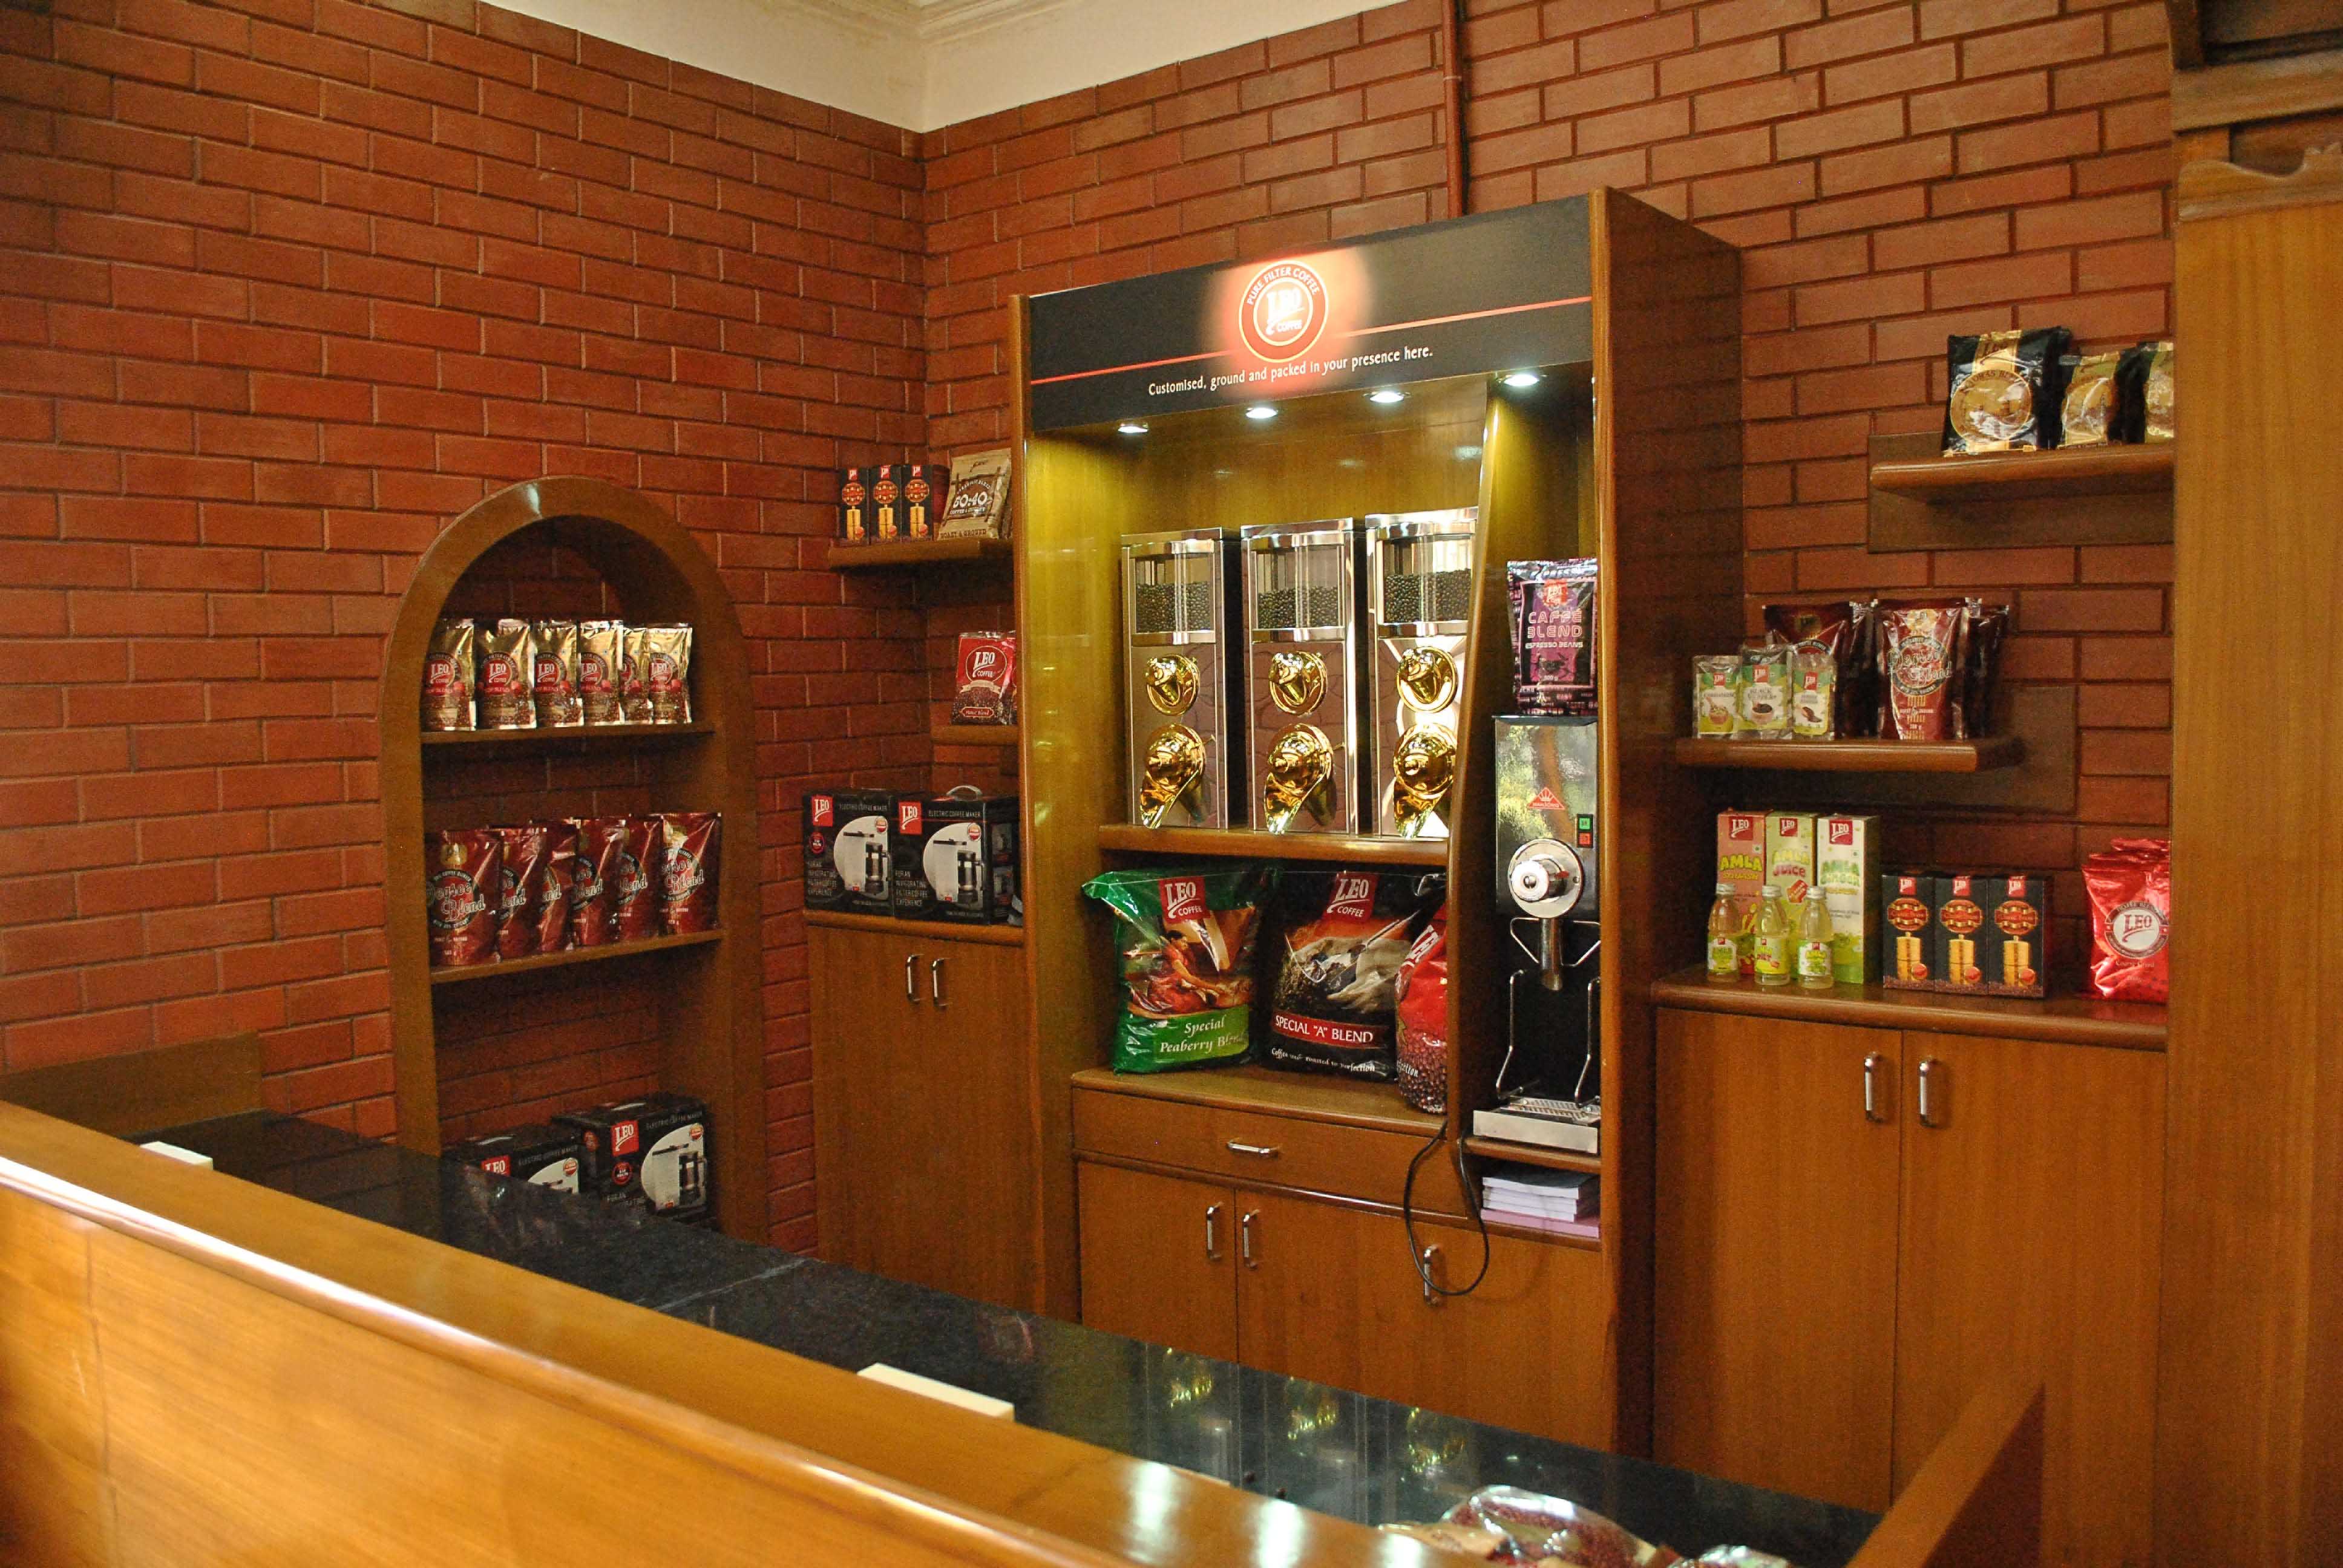 Leo Coffee in Velachery Road, Velachery